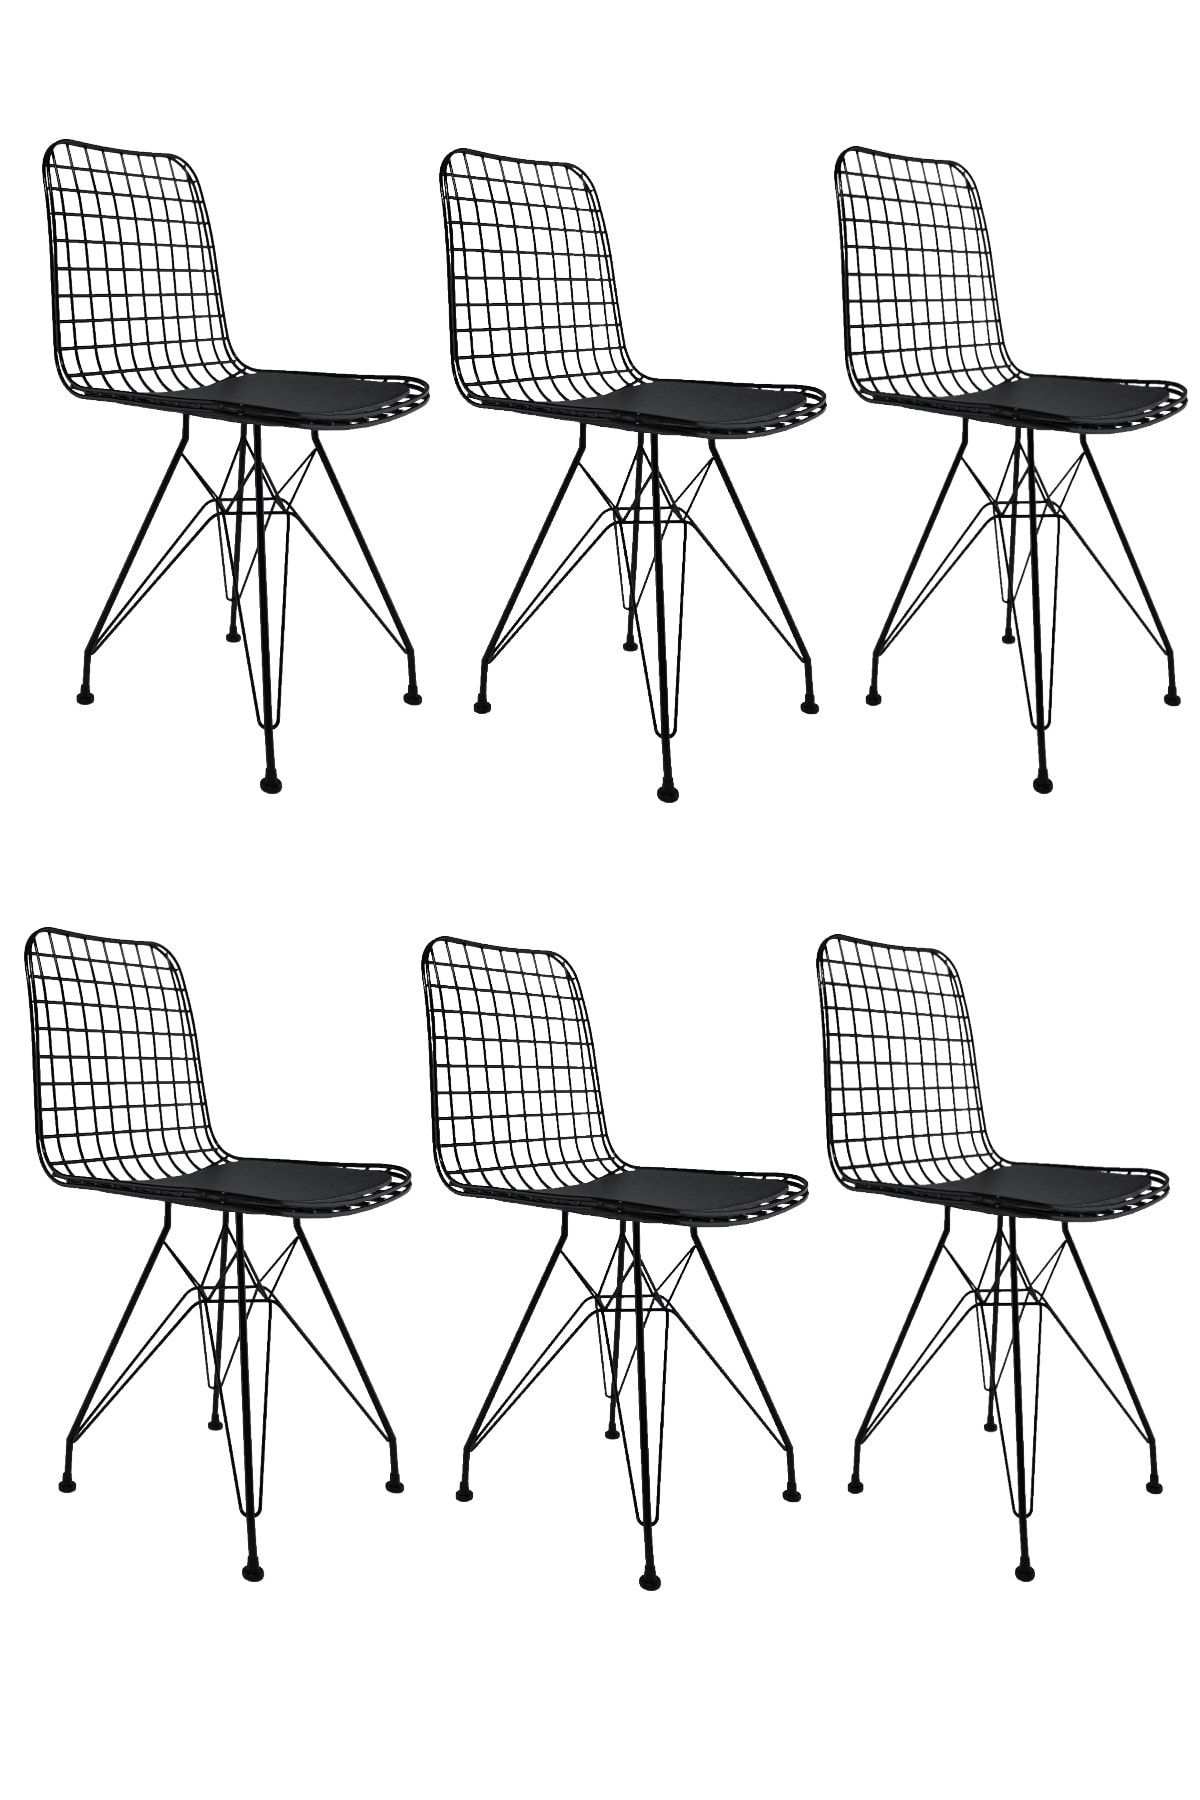 Kenzlife Knsz kafes tel sandalyesi 6 lı mazlum syhsyh ofis cafe bahçe mutfak